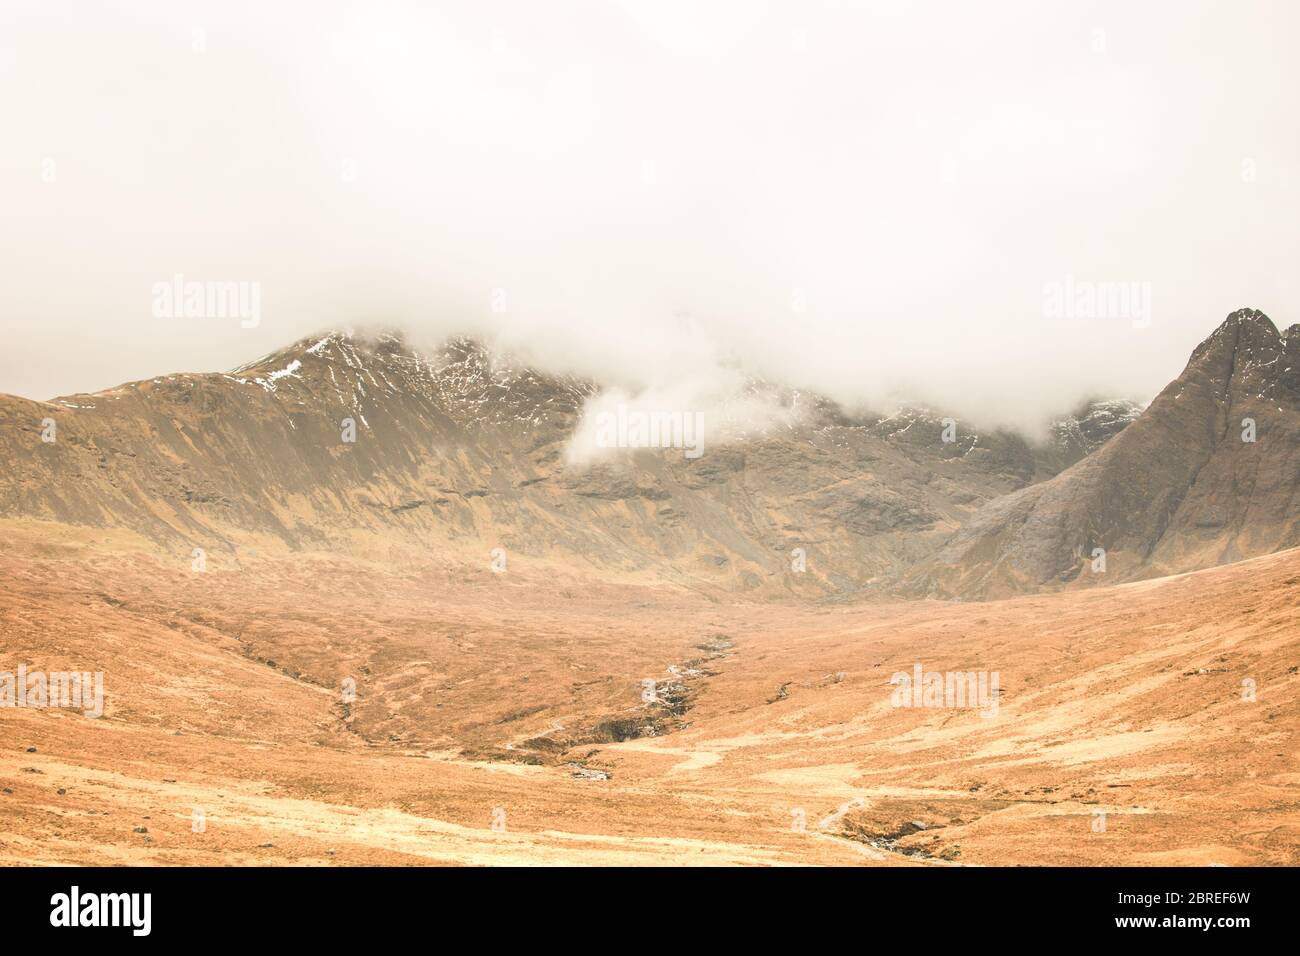 Una montagna dell'Isola di Skye in Scozia coperta di nuvole in un'atmosfera autunnale Foto Stock